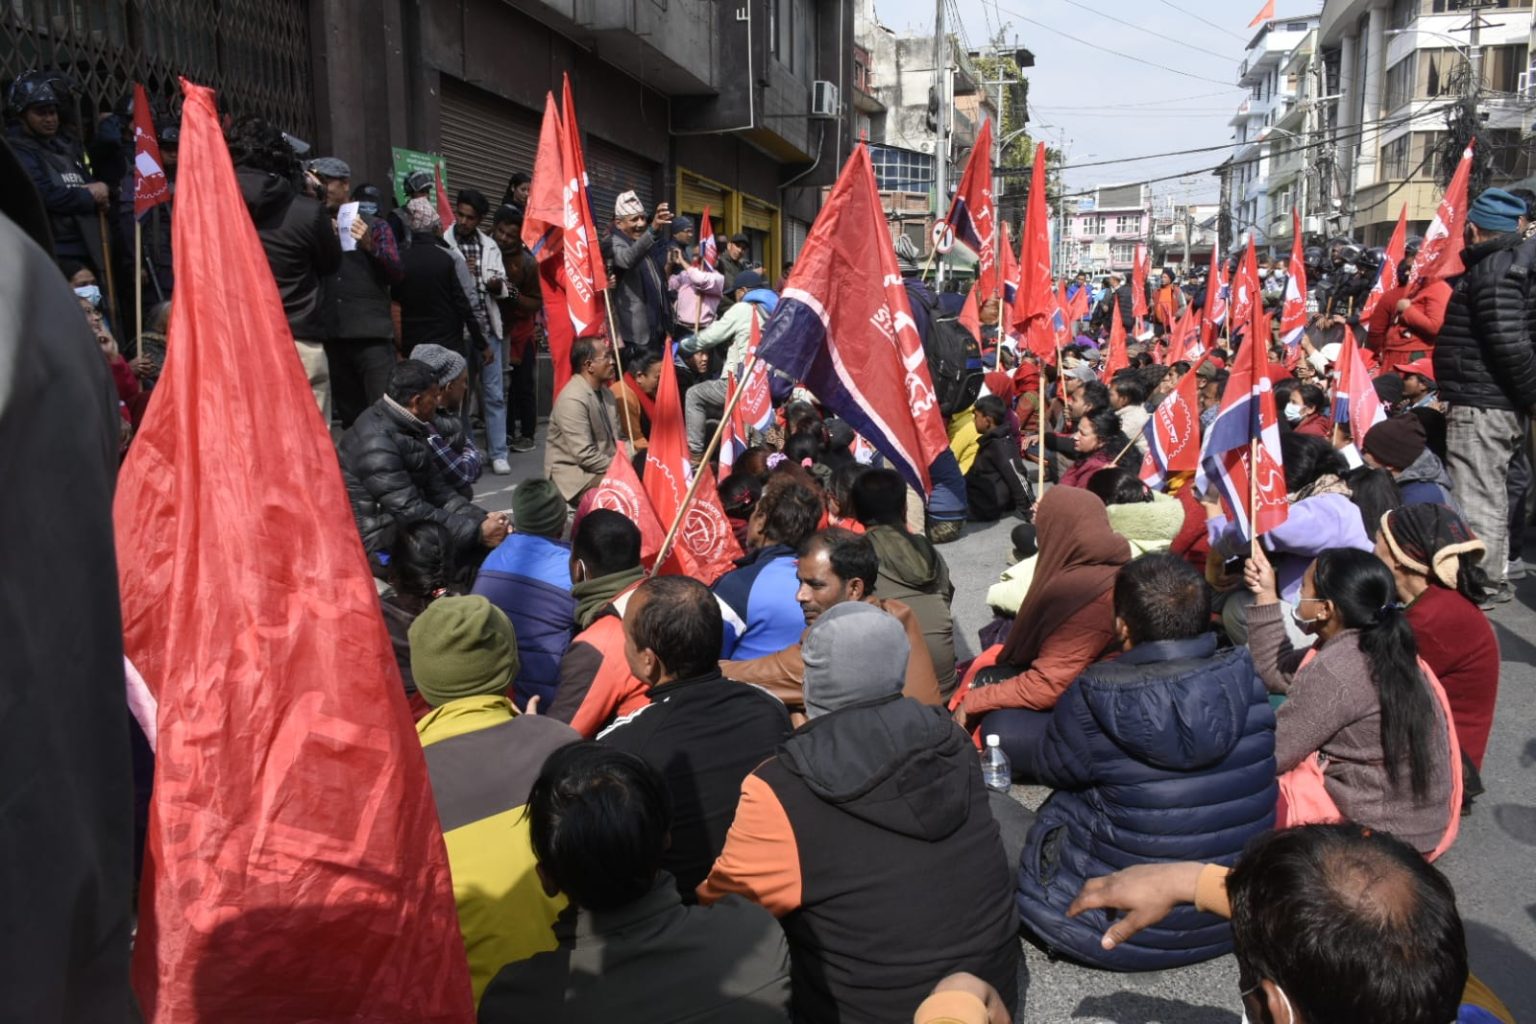 फुटपाथ व्यवसायीद्वारा काठमाडौं महानगरविरूद्ध आन्दोलनको घोषणा